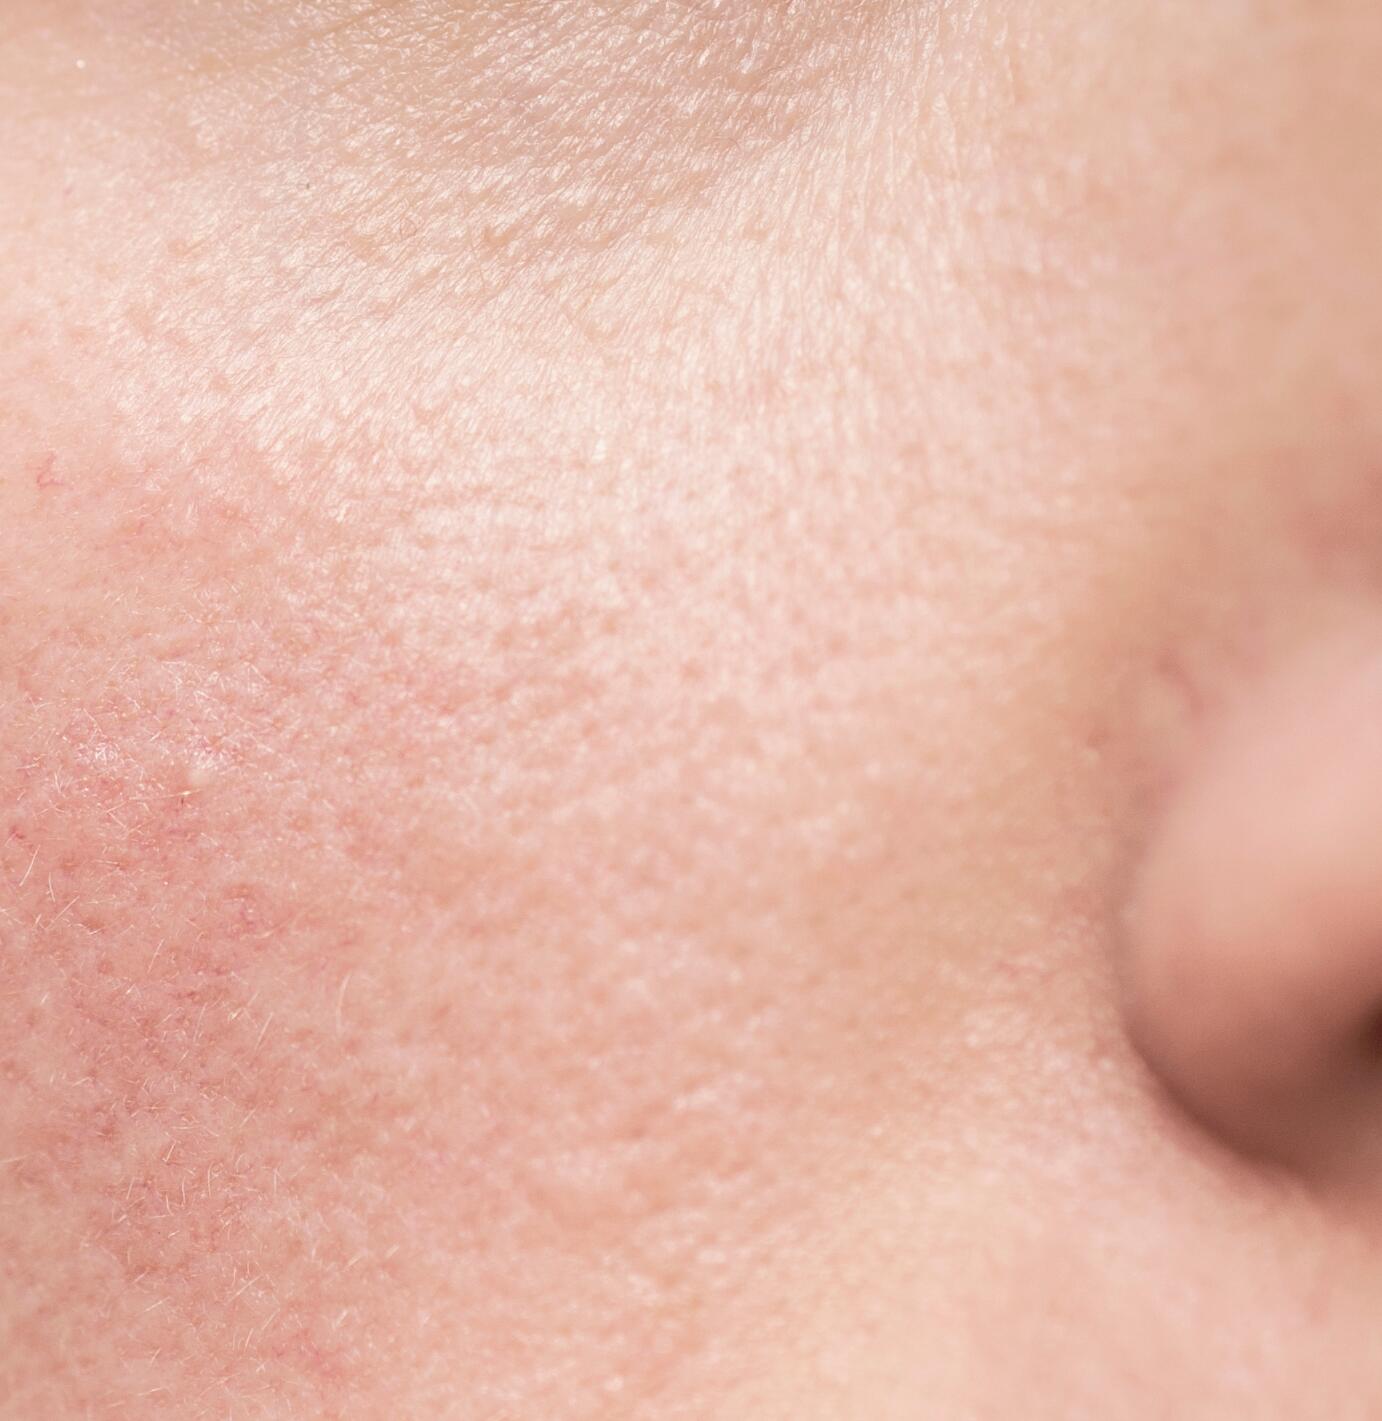 Boutons sur le visage : identification, causes et comment les traiter ? -  Matière Brute Lab